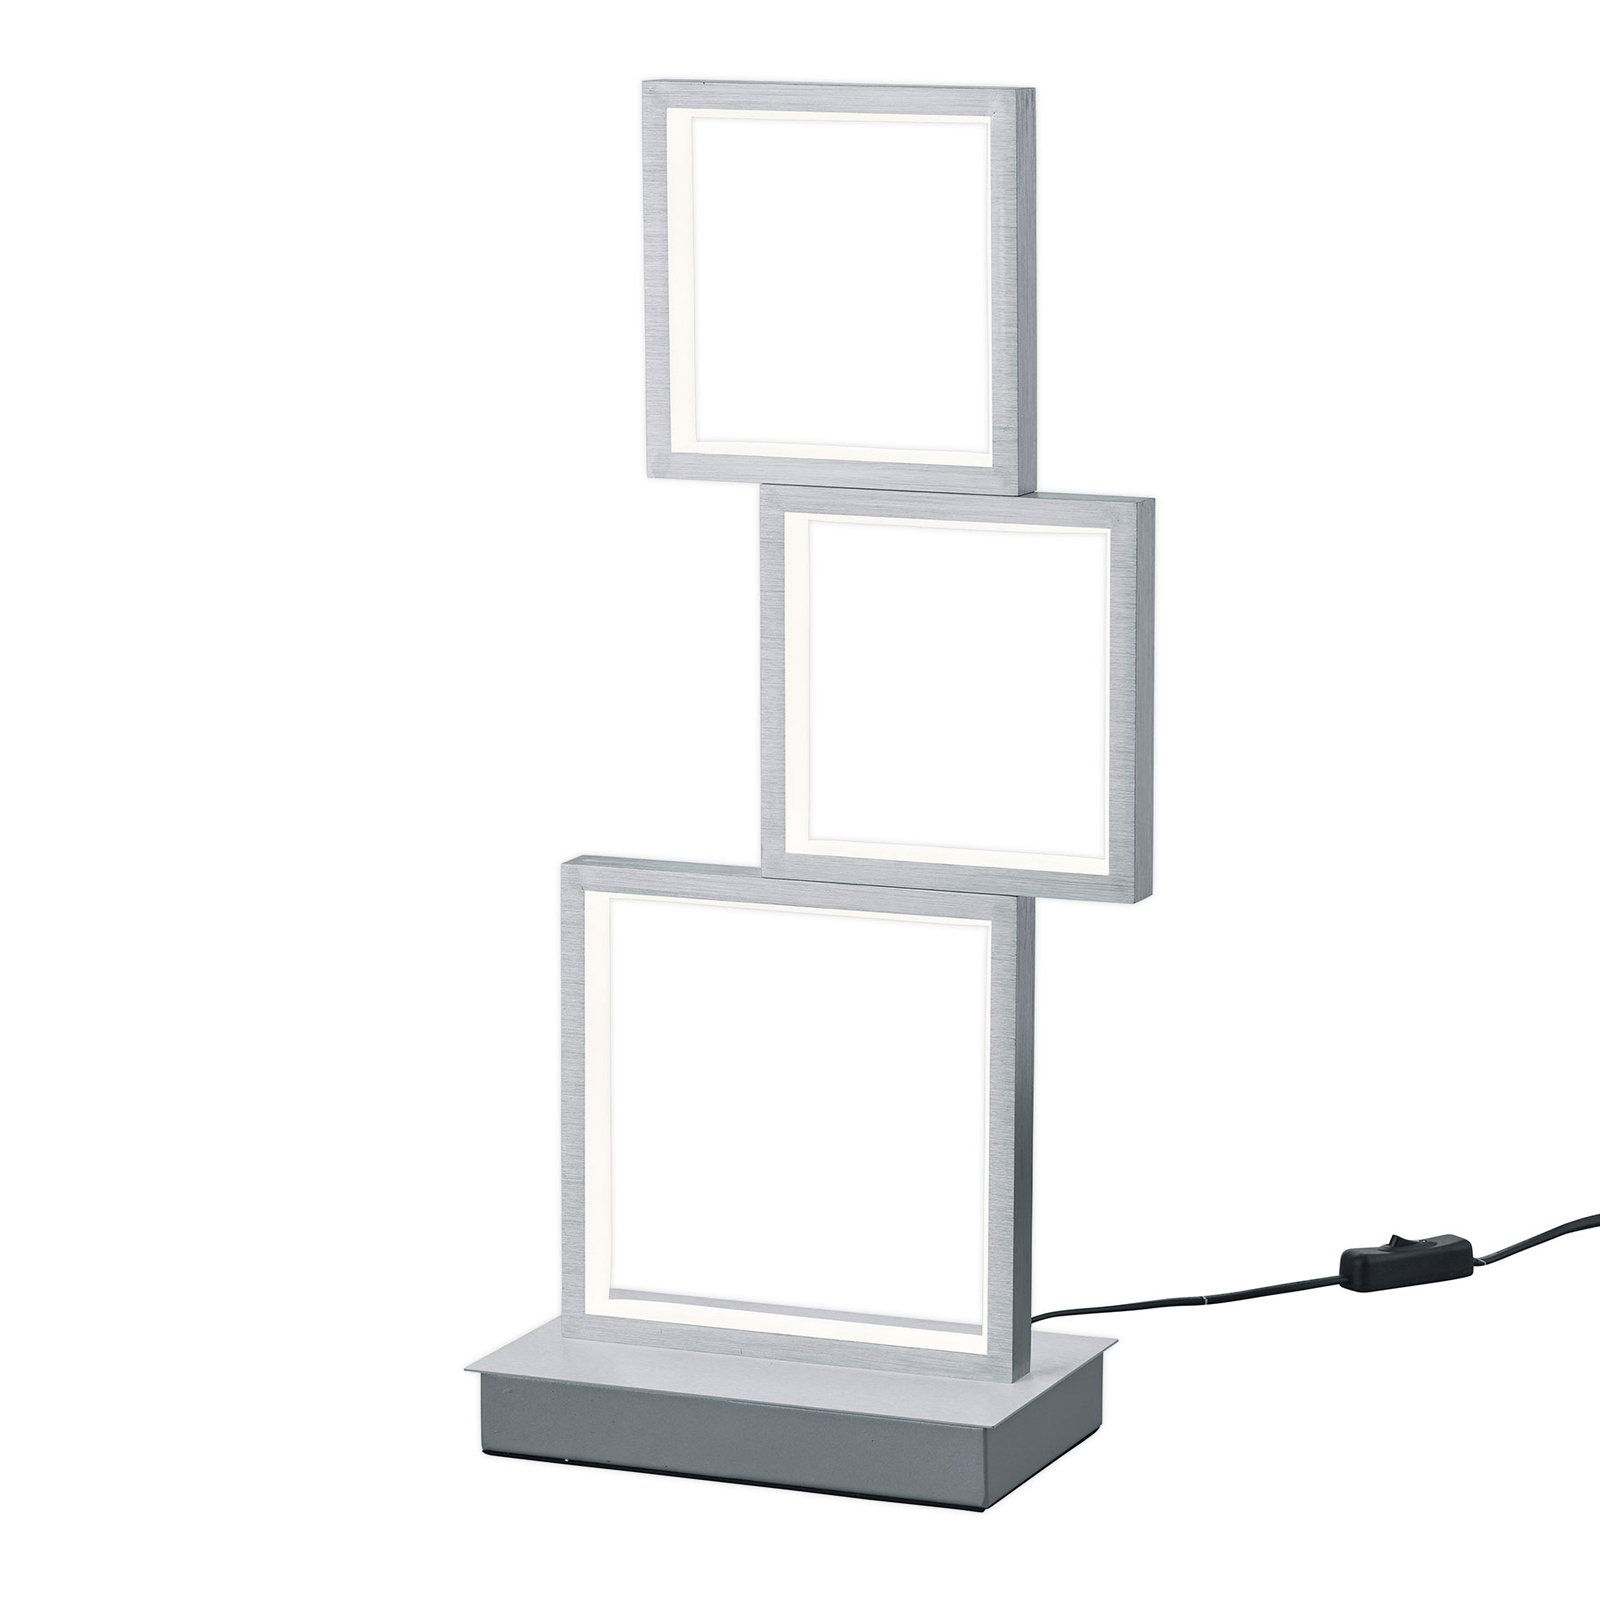 Lampada LED tavolo Sorrento, alluminio spazzolato